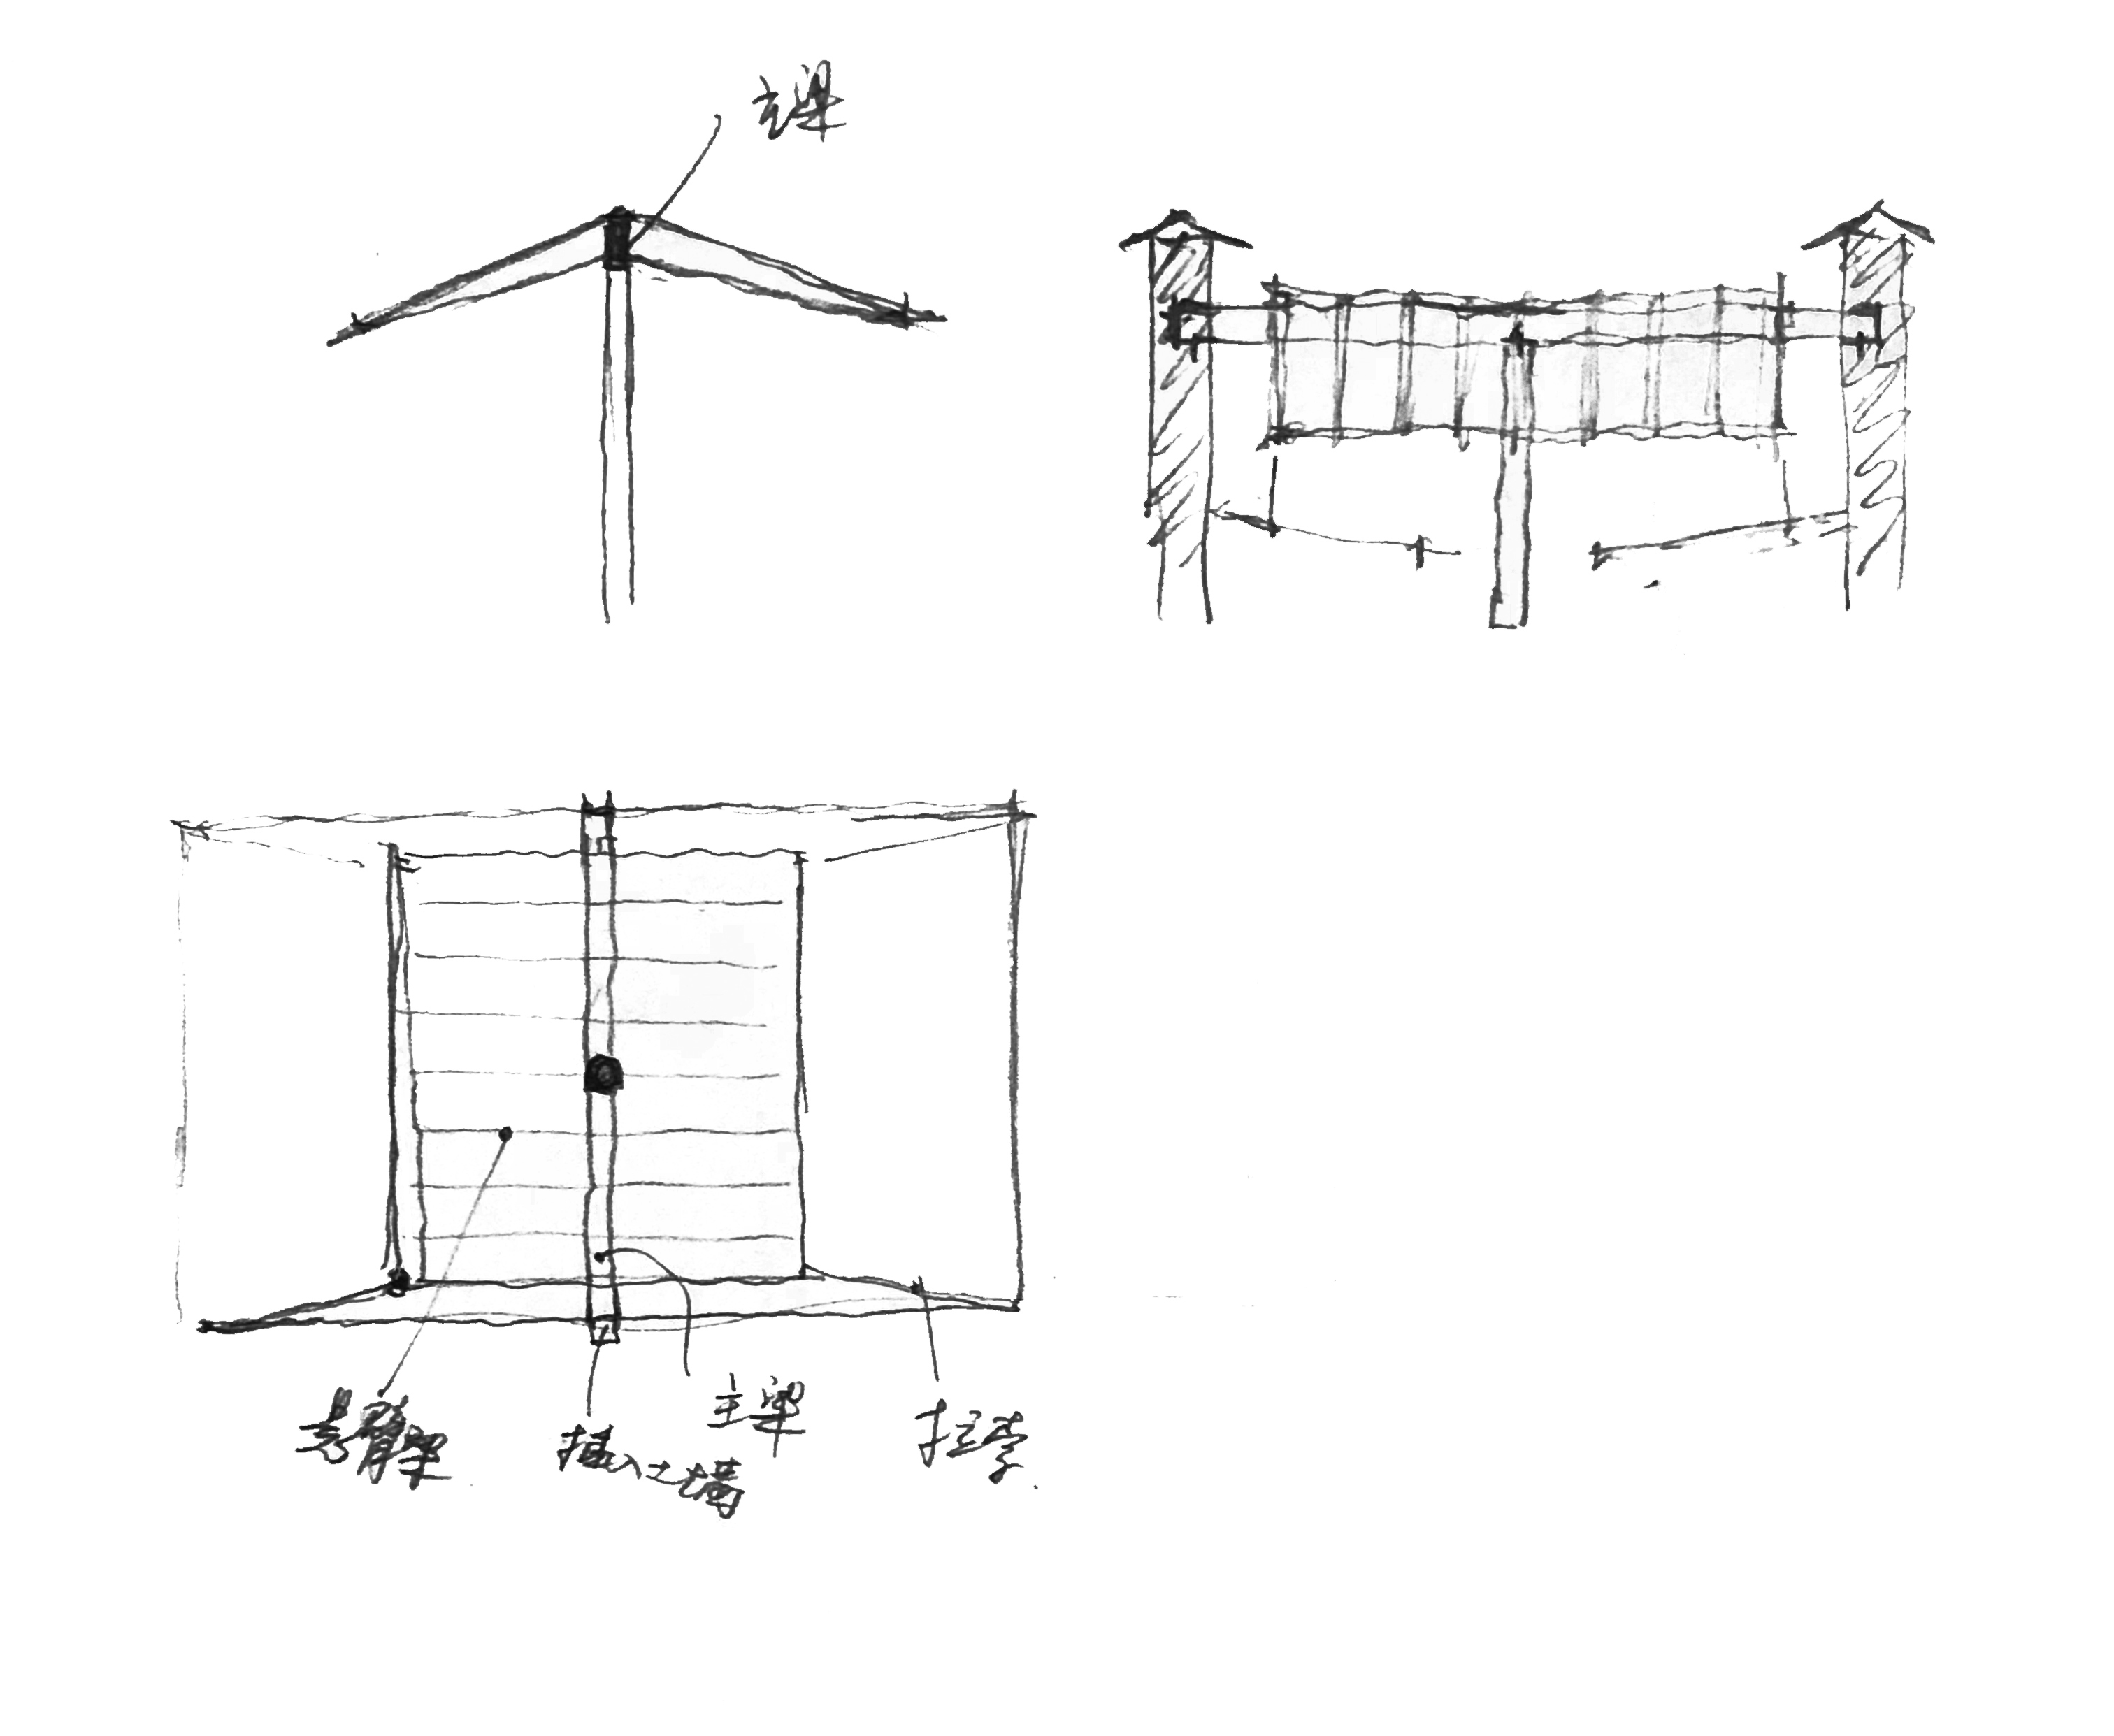 04 伞型屋顶草图 .华黎 Unbrella-shaped roof sketch .HUA Li.jpg